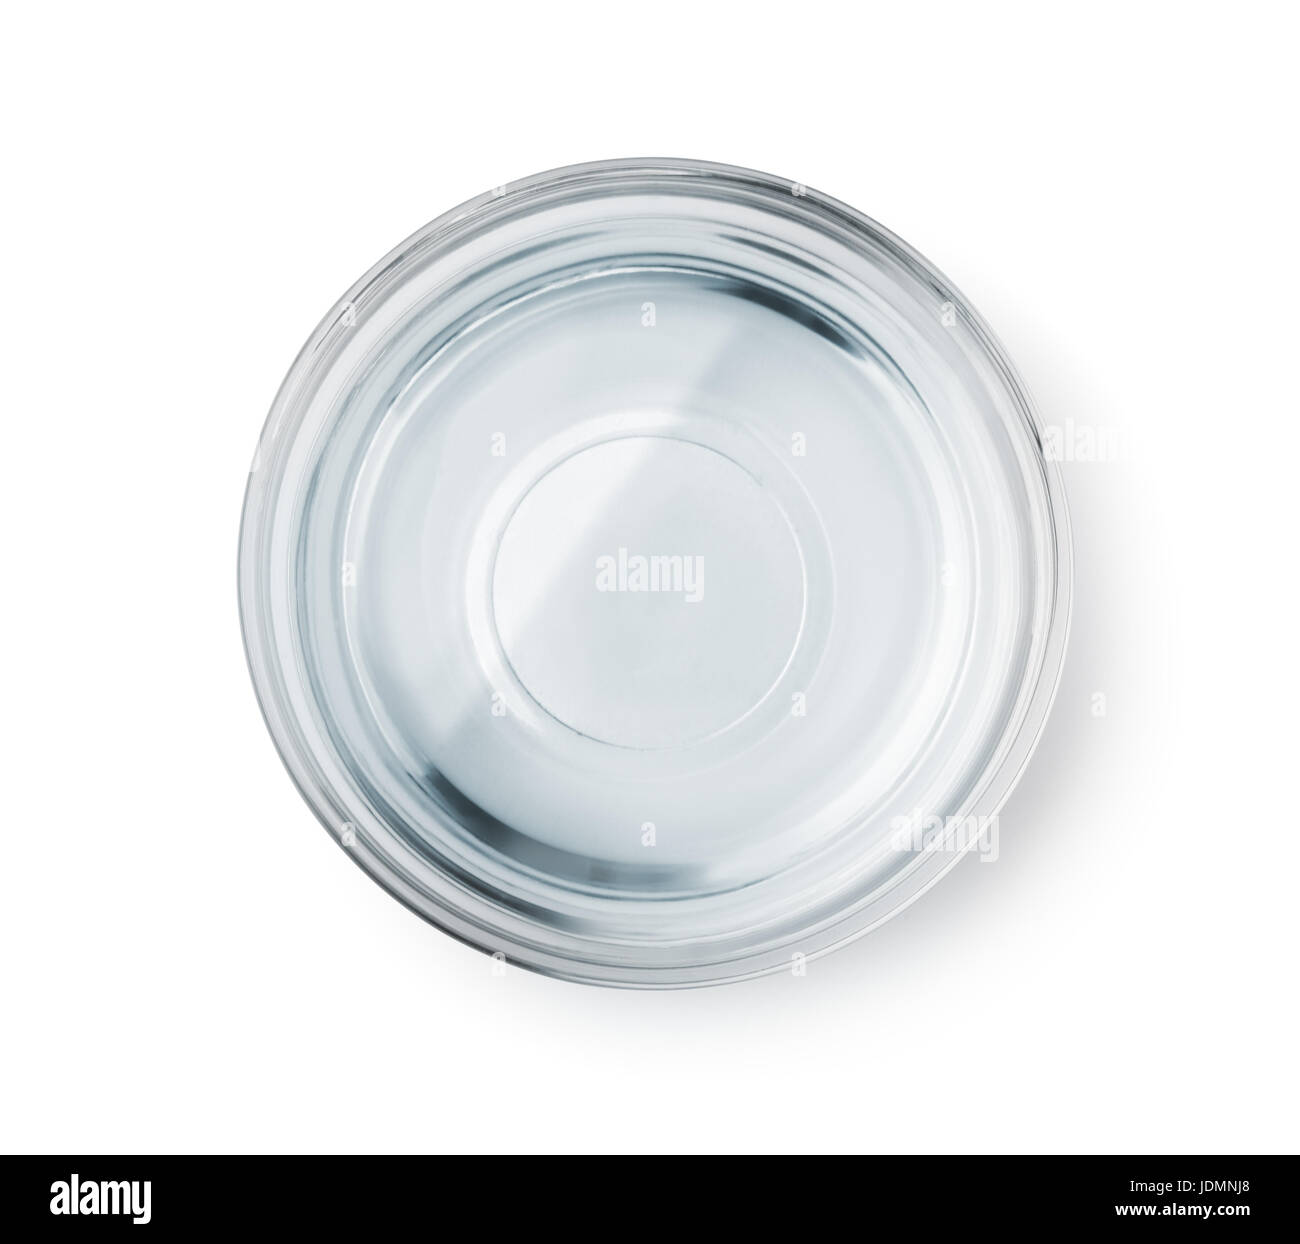 Vue de dessus du bol en verre à l'eau claire isolated on white Banque D'Images